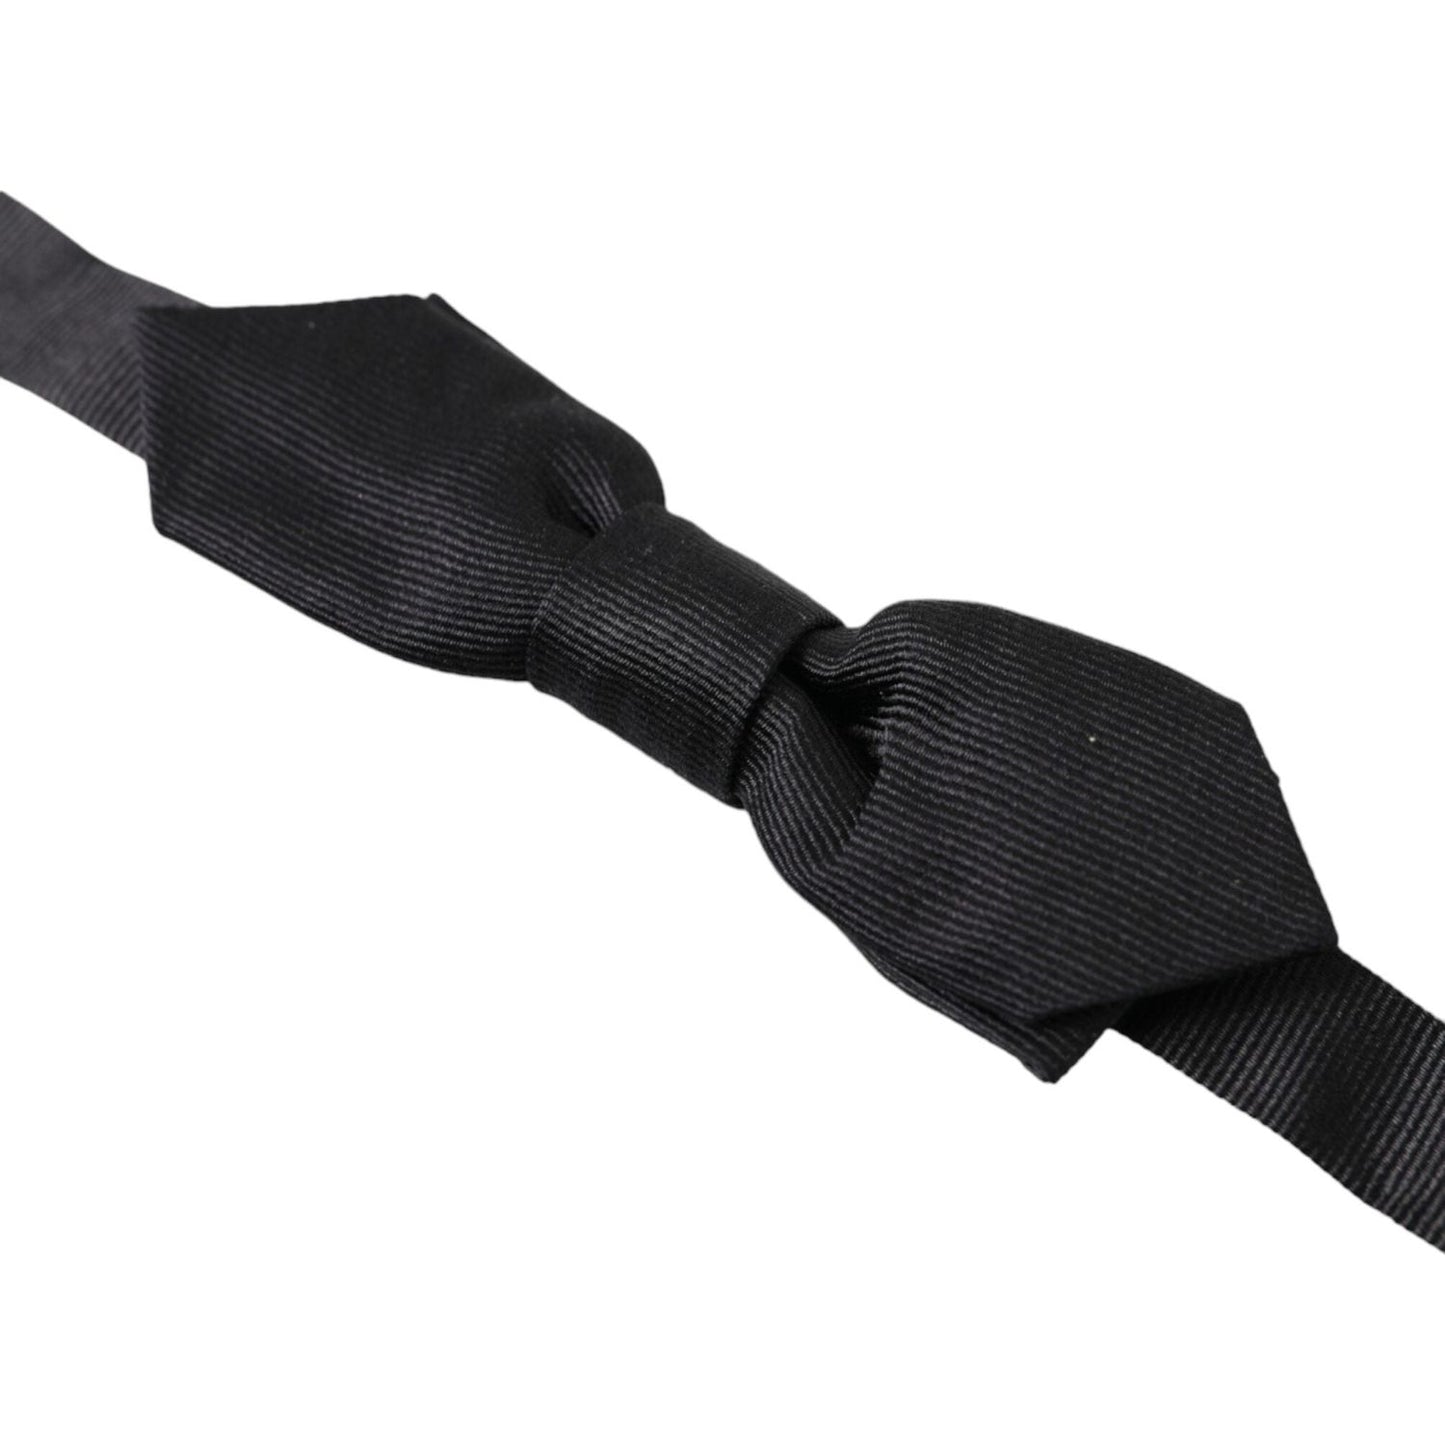 Dolce & GabbanaElegant Silk Black Bow Tie for Sophisticated StyleMcRichard Designer Brands£129.00